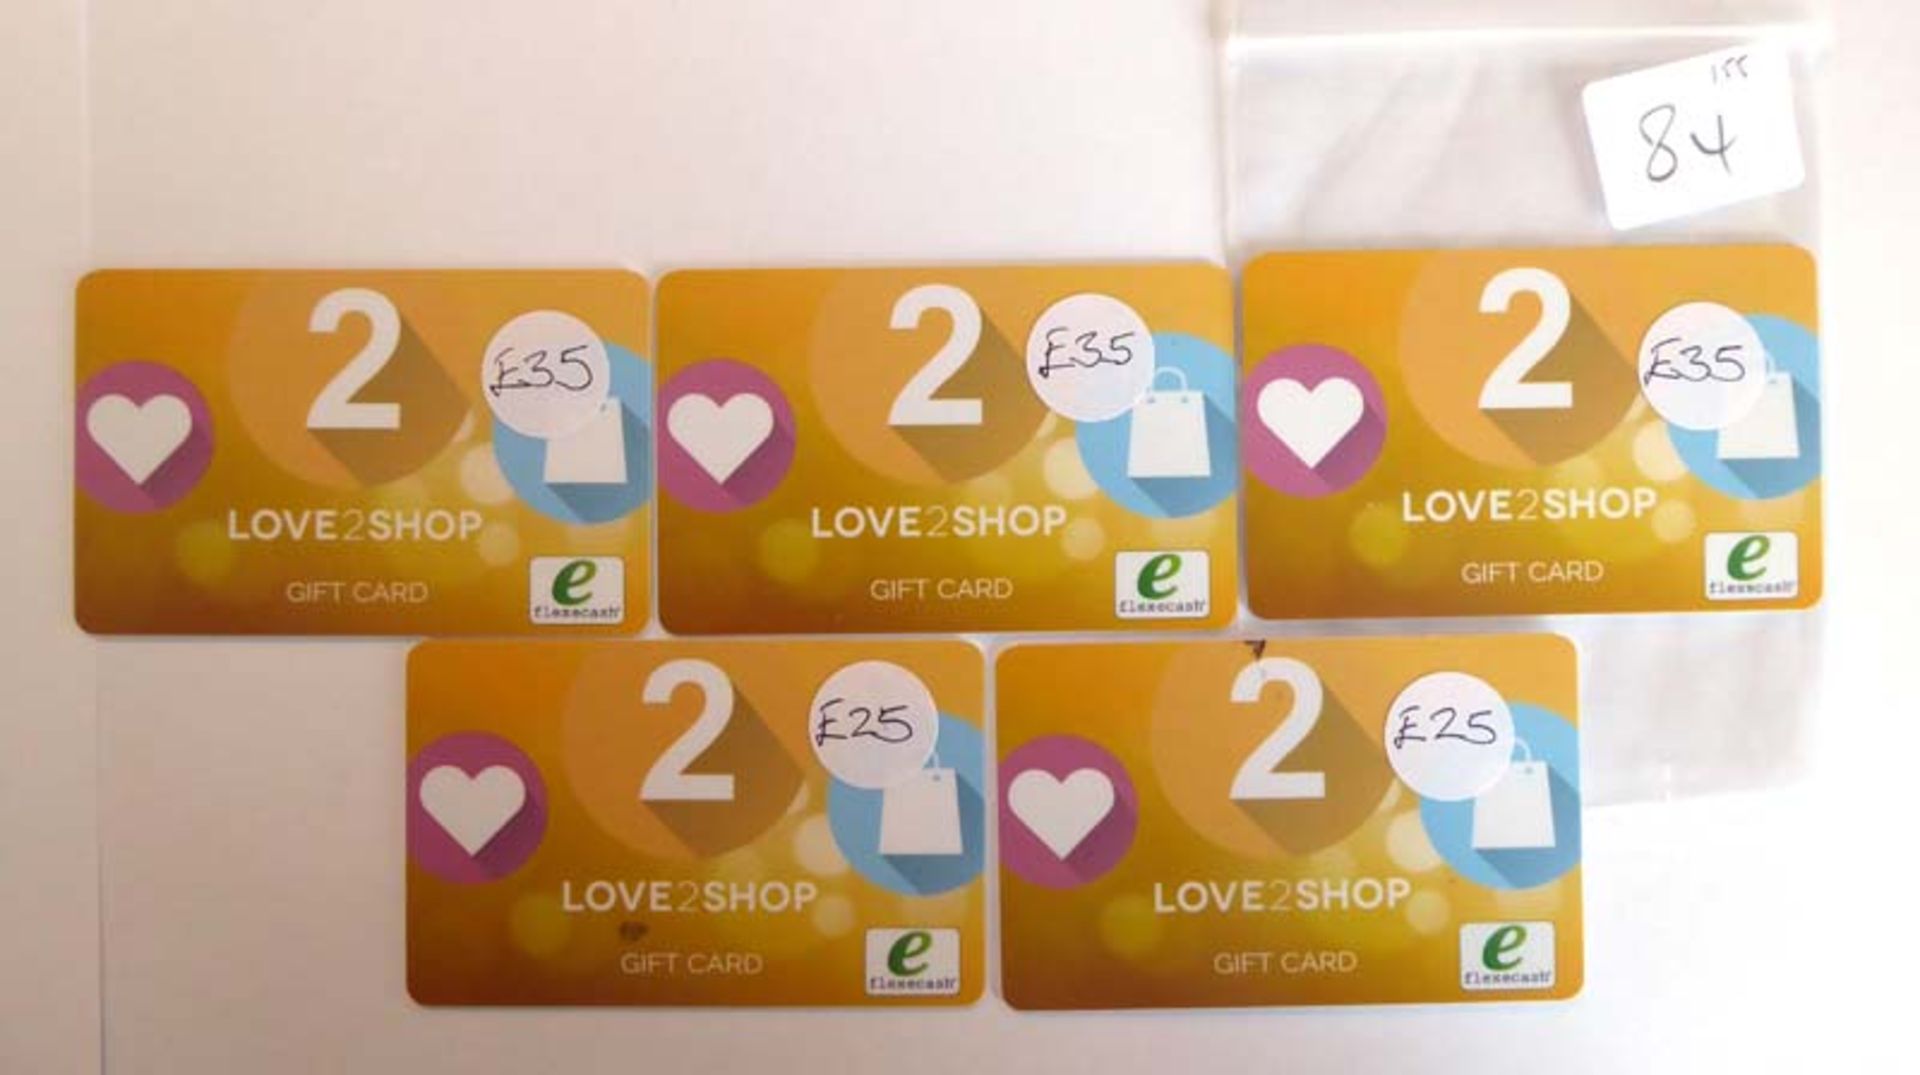 Love 2 Shop (x5) - Total face value £155